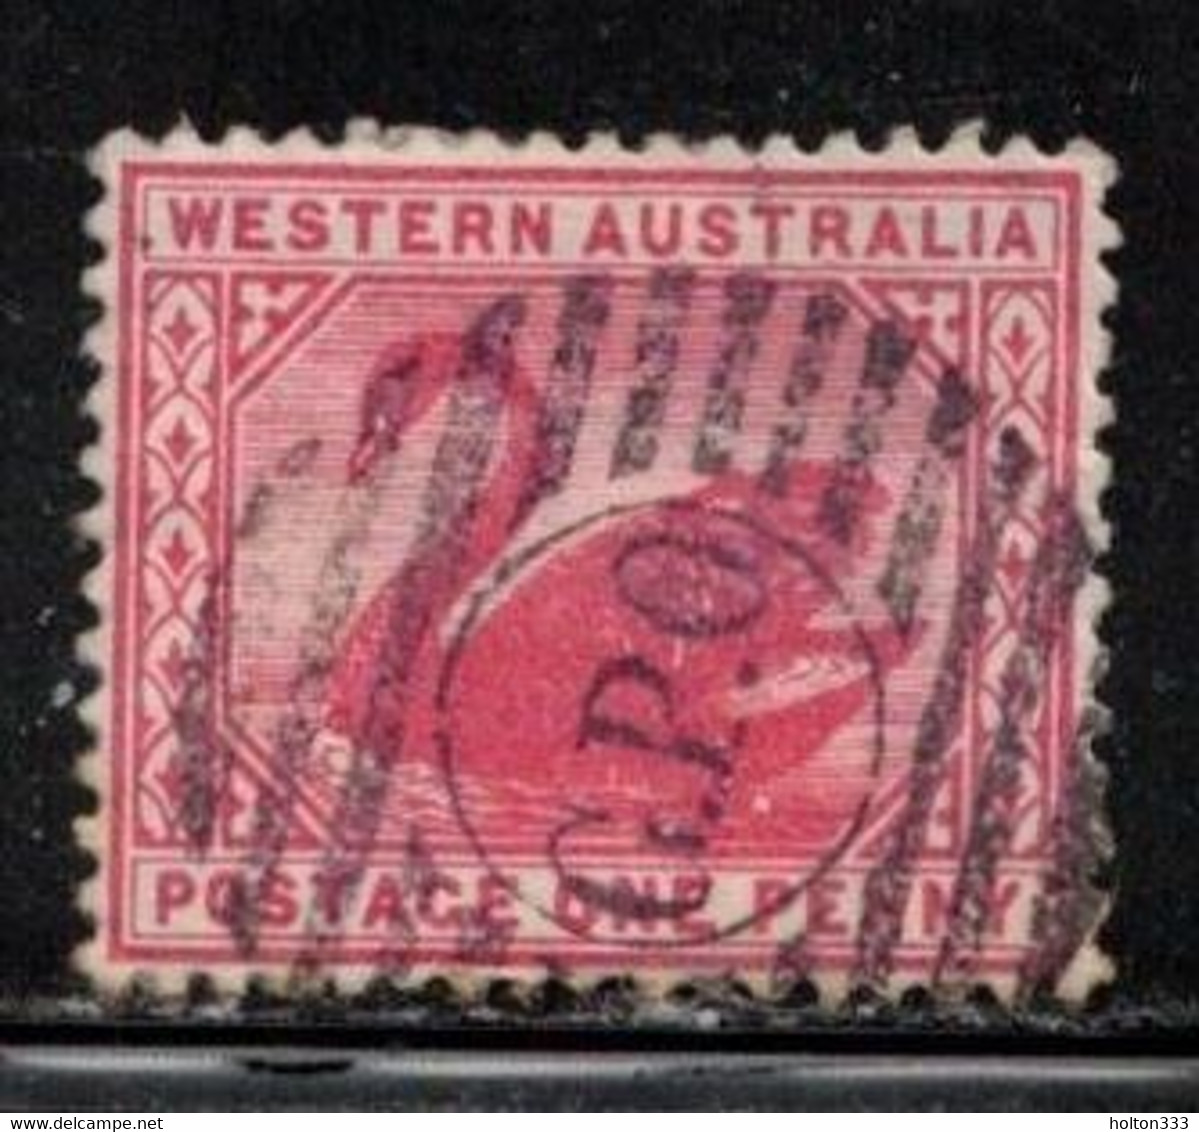 WESTERN AUSTRALIA Scott # 62 Used - Used Stamps